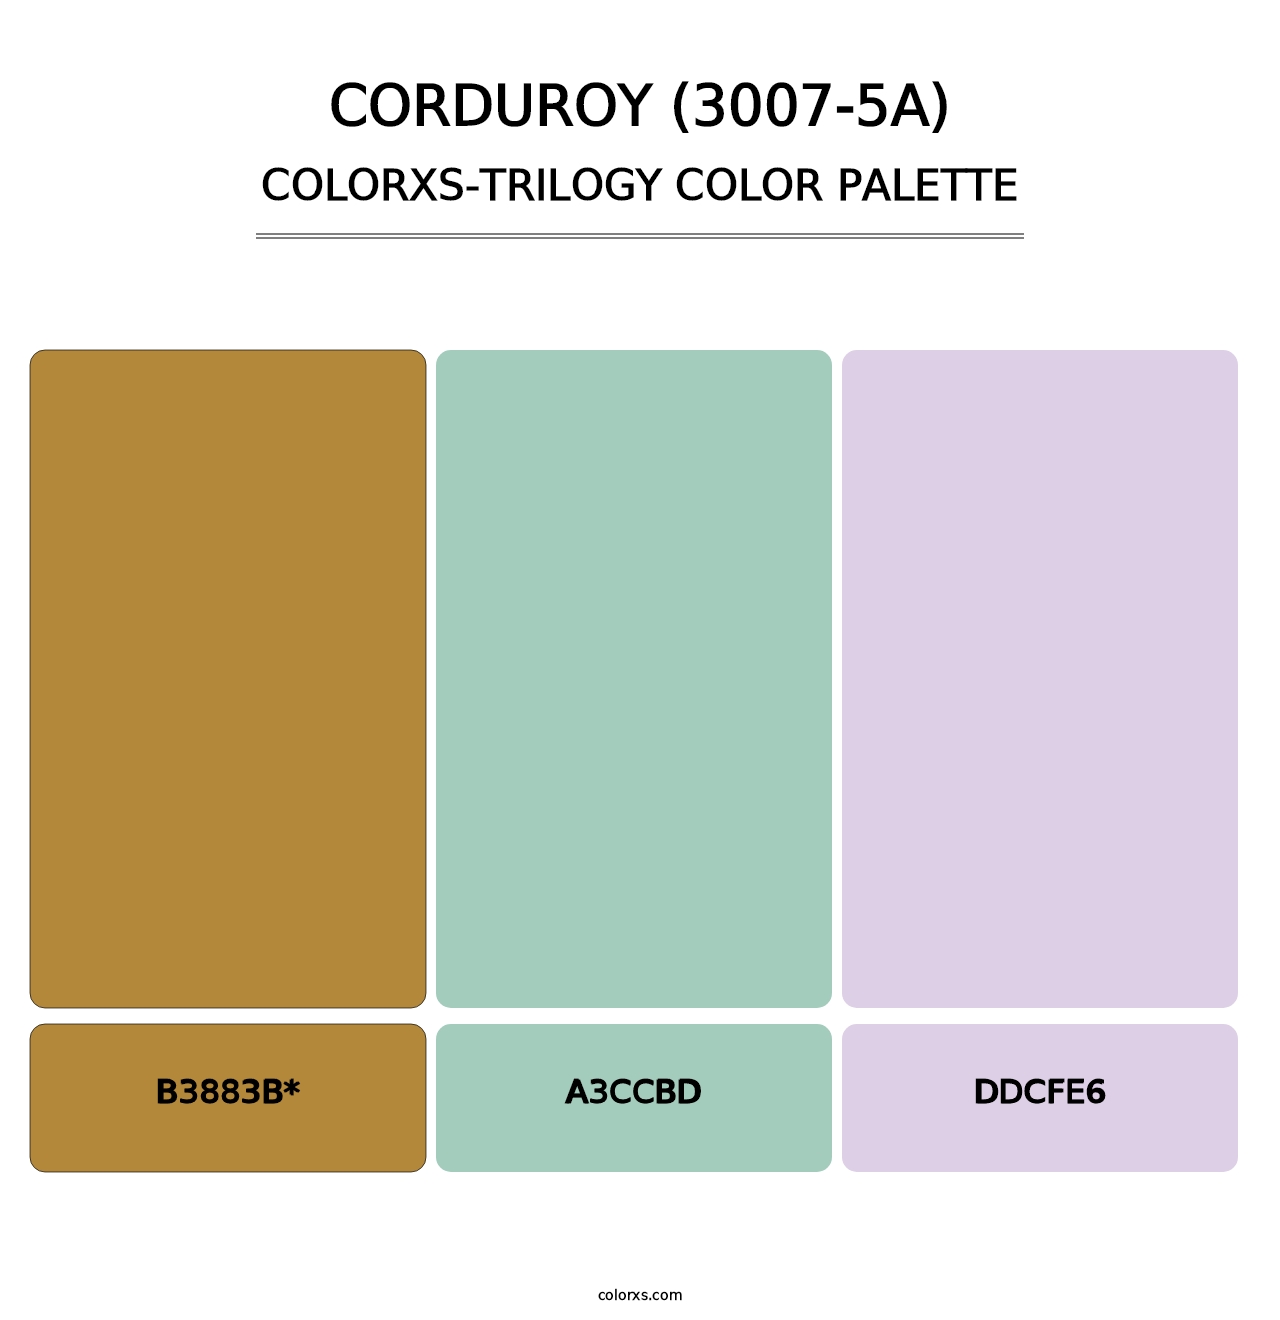 Corduroy (3007-5A) - Colorxs Trilogy Palette